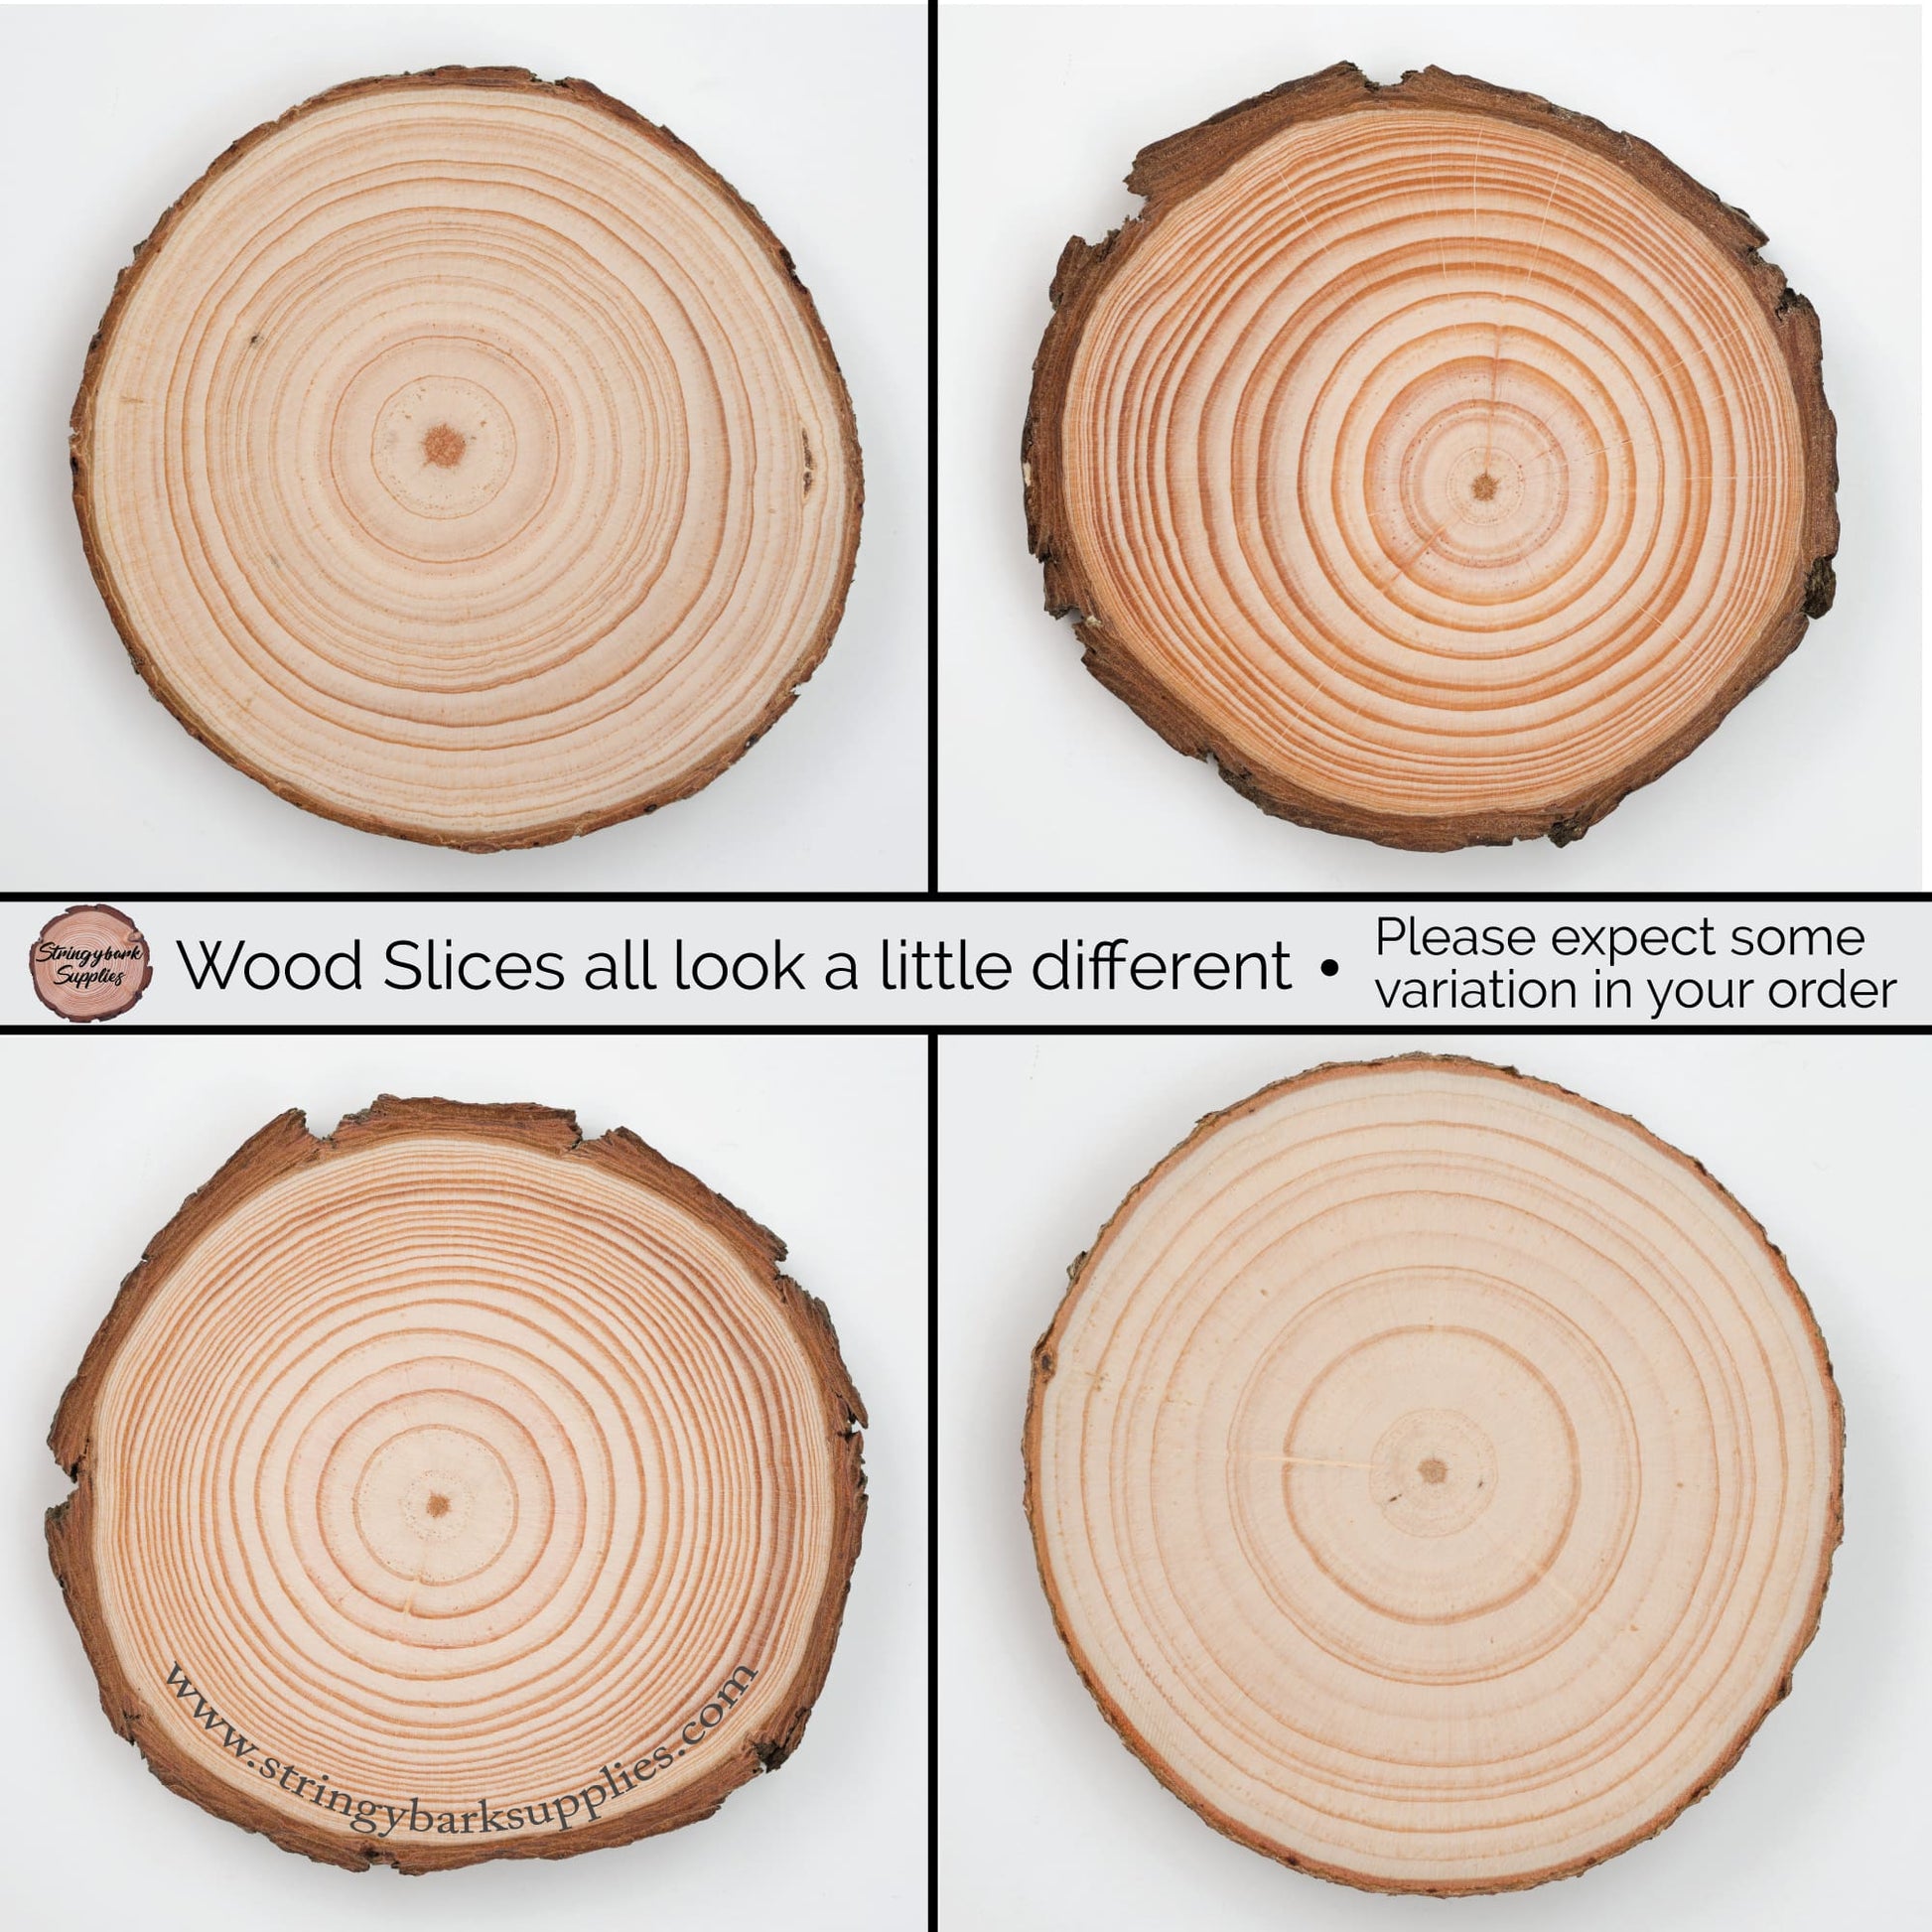 35 Piece Wood Slice Craft Pack - Wood slice kits